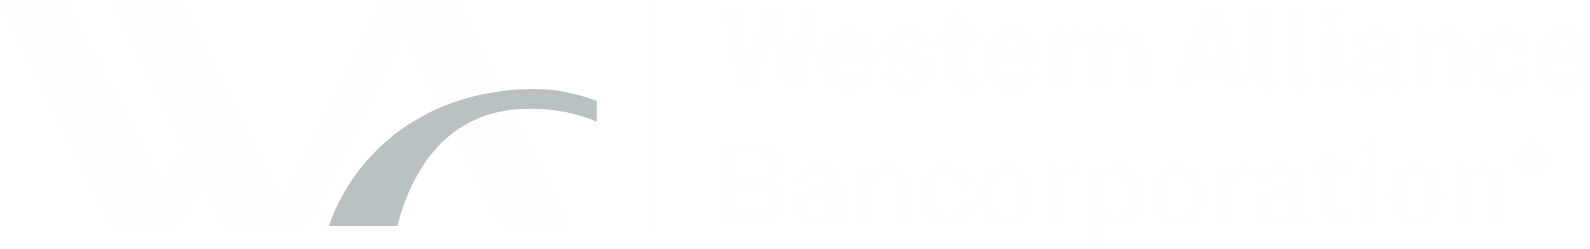 Western Alliance Bancorporation
 Logo groß für dunkle Hintergründe (transparentes PNG)